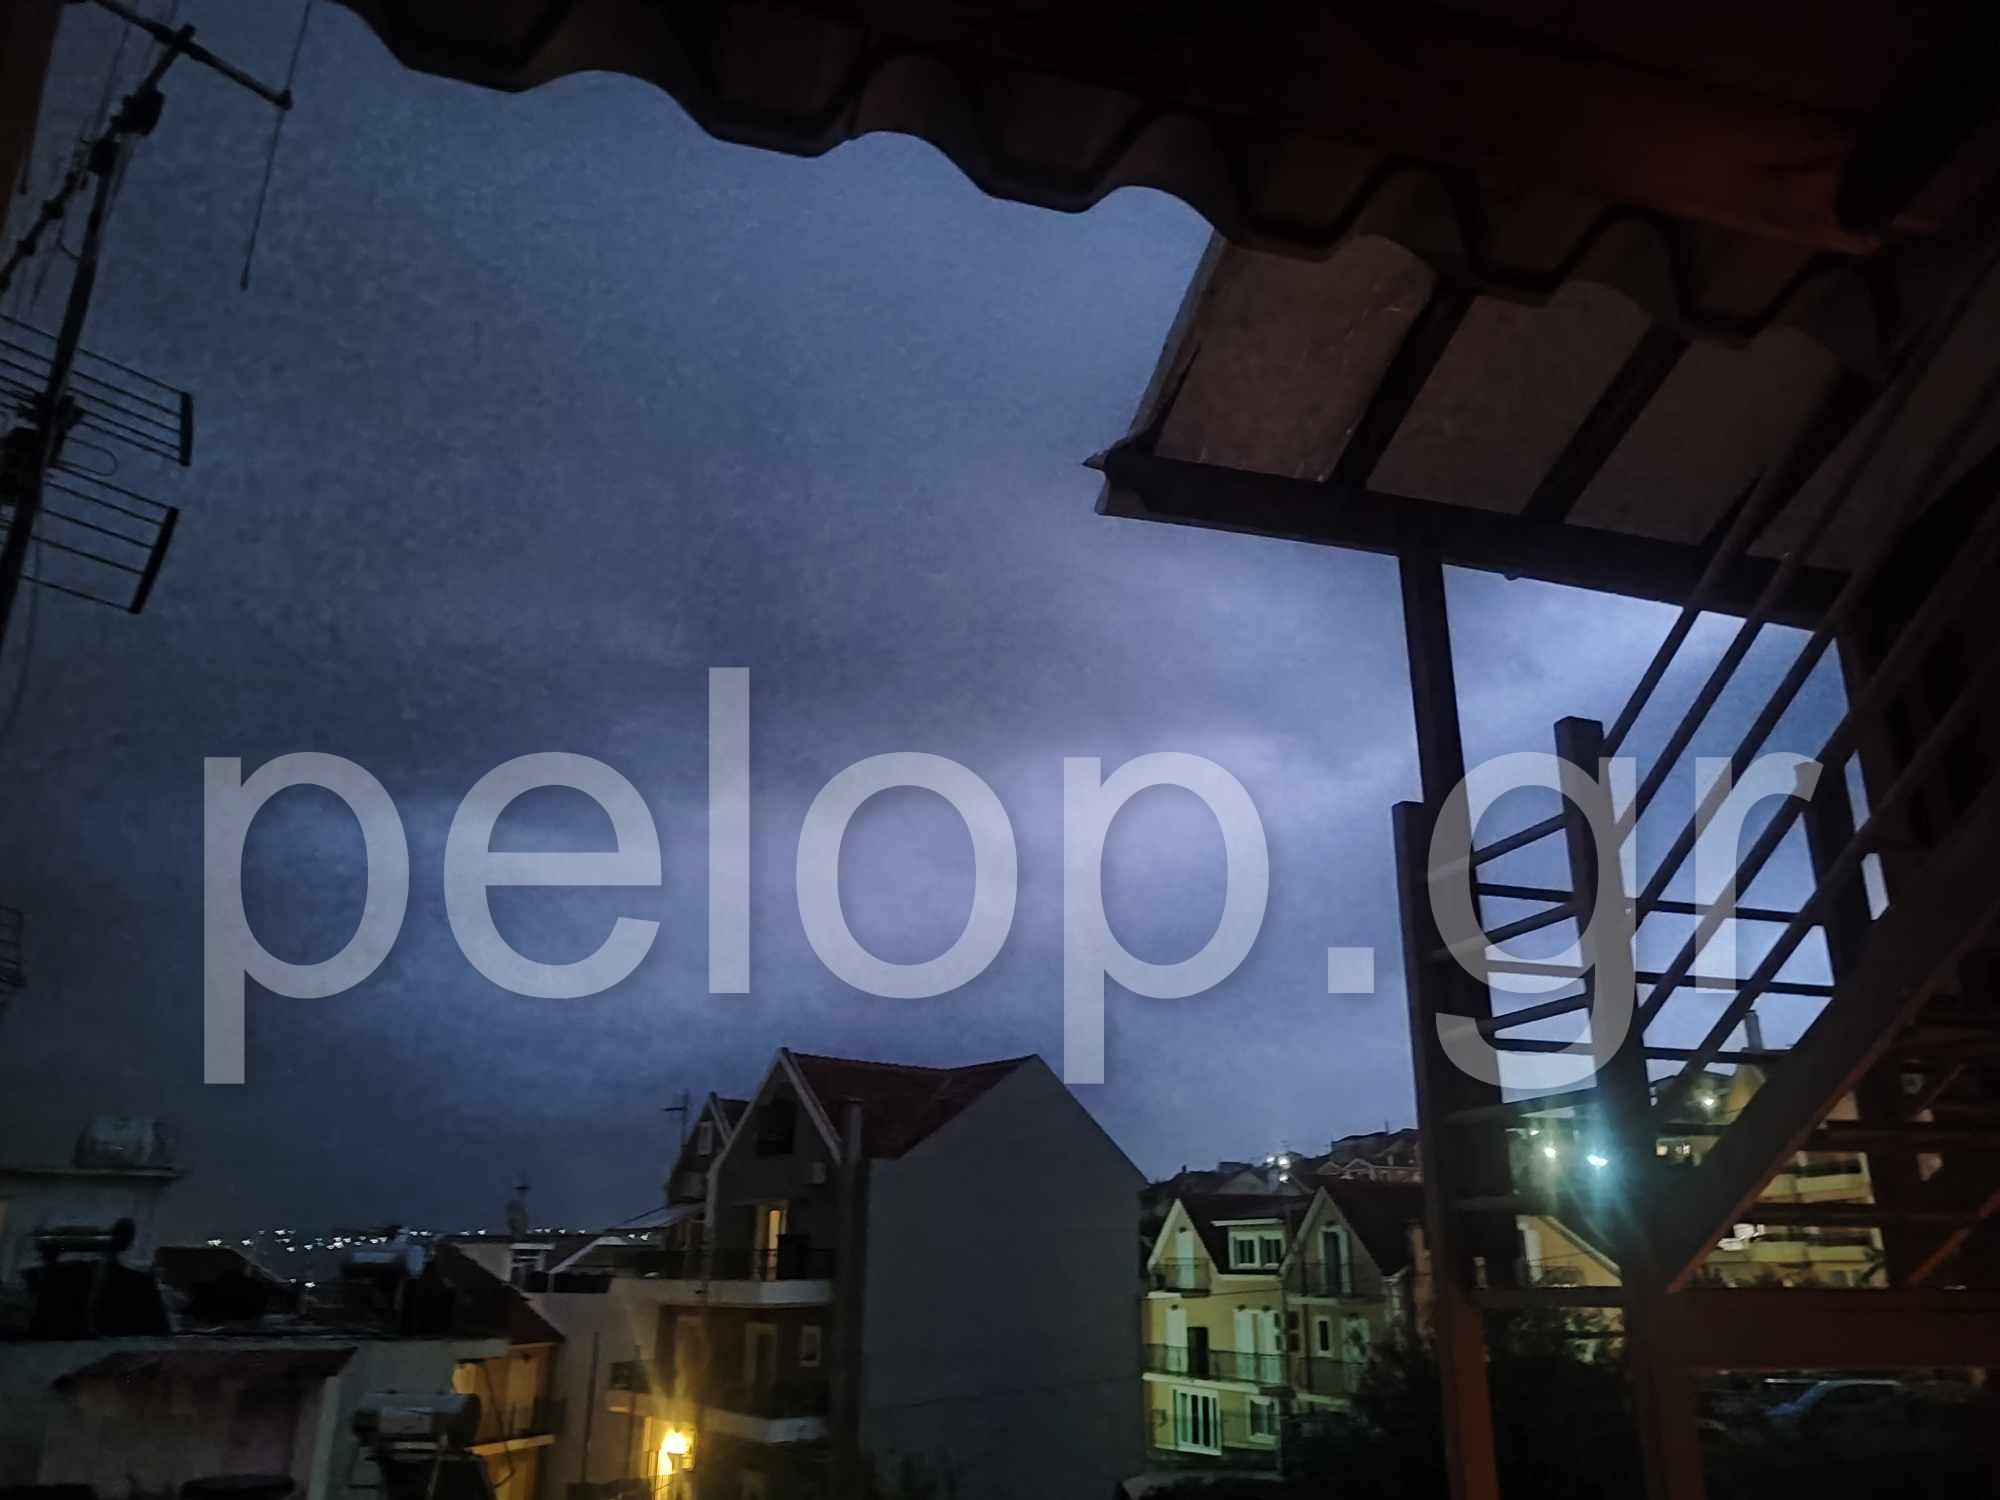 Κακοκαιρία στην Κεφαλονιά: Αδιάκοπα μπουμπουνητά, με ισχυρή βροχόπτωση και ανέμους - H στιγμή που «πέφτει» κεραυνός! ΦΩΤΟ - ΒΙΝΤΕΟ